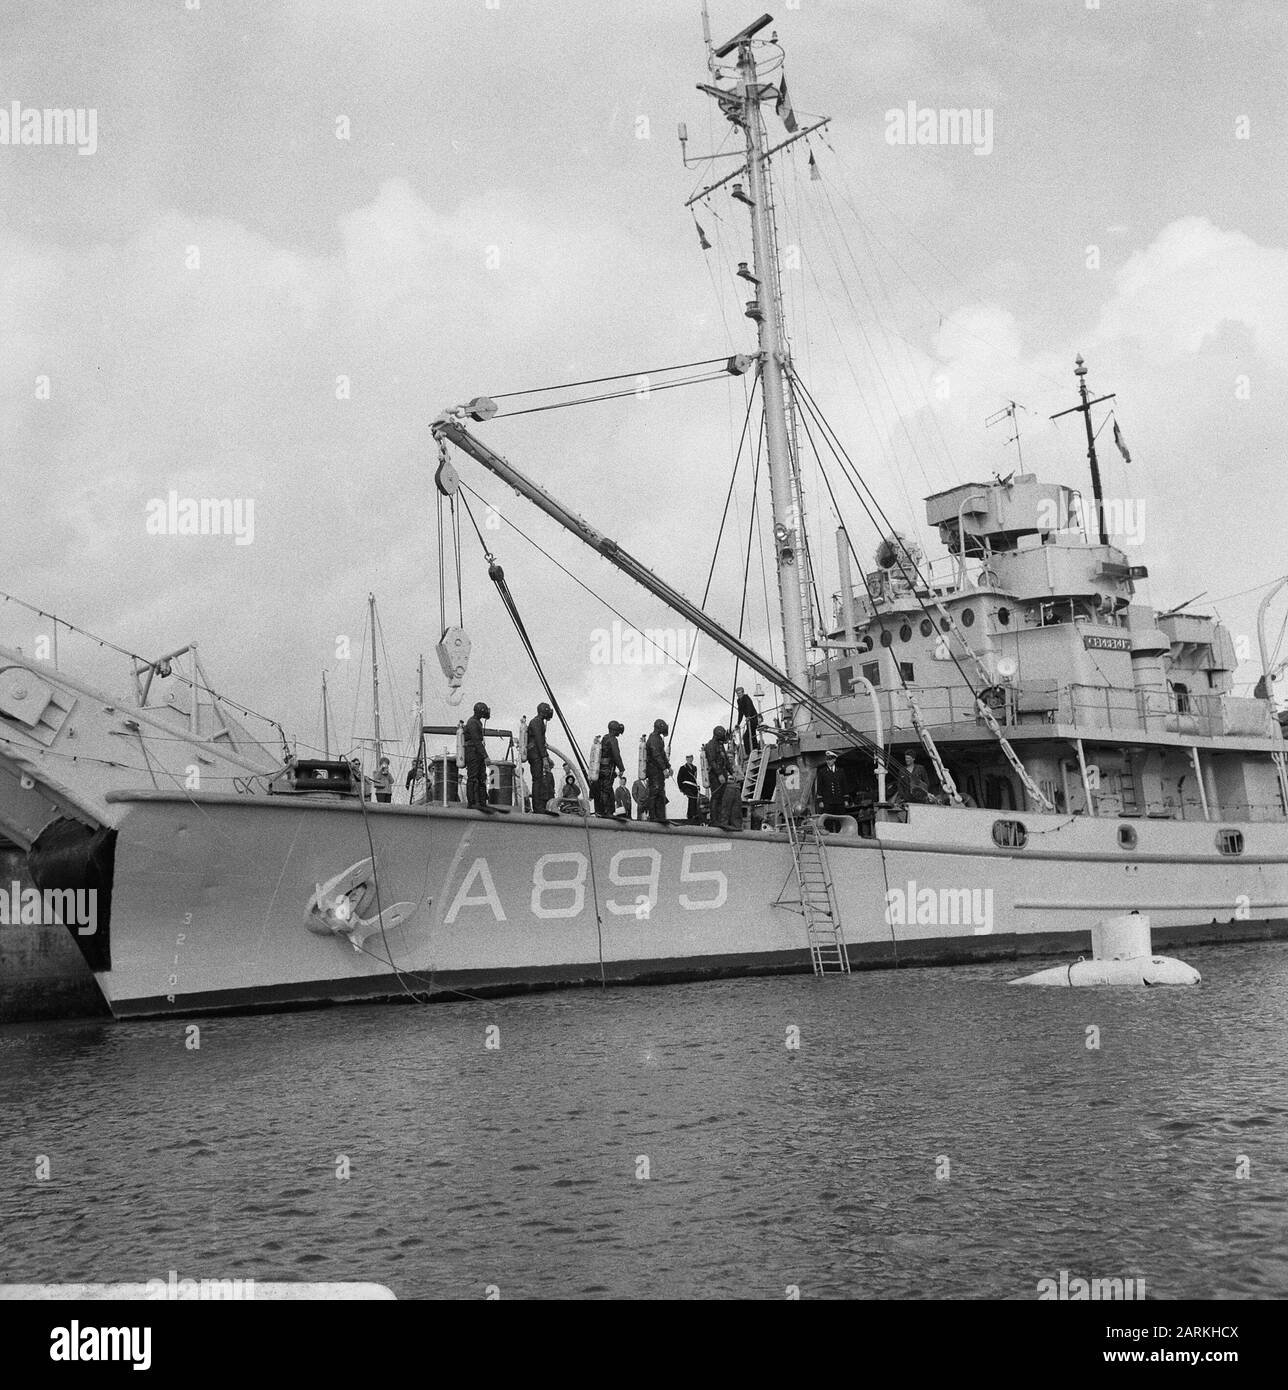 Jours de flotte à Den Helder. Plongeurs à bord d'un bateau de plongée (numéro d'arc A895) Date : 5 août 1966 lieu : den Helder mots clés : plongeurs, marins Banque D'Images